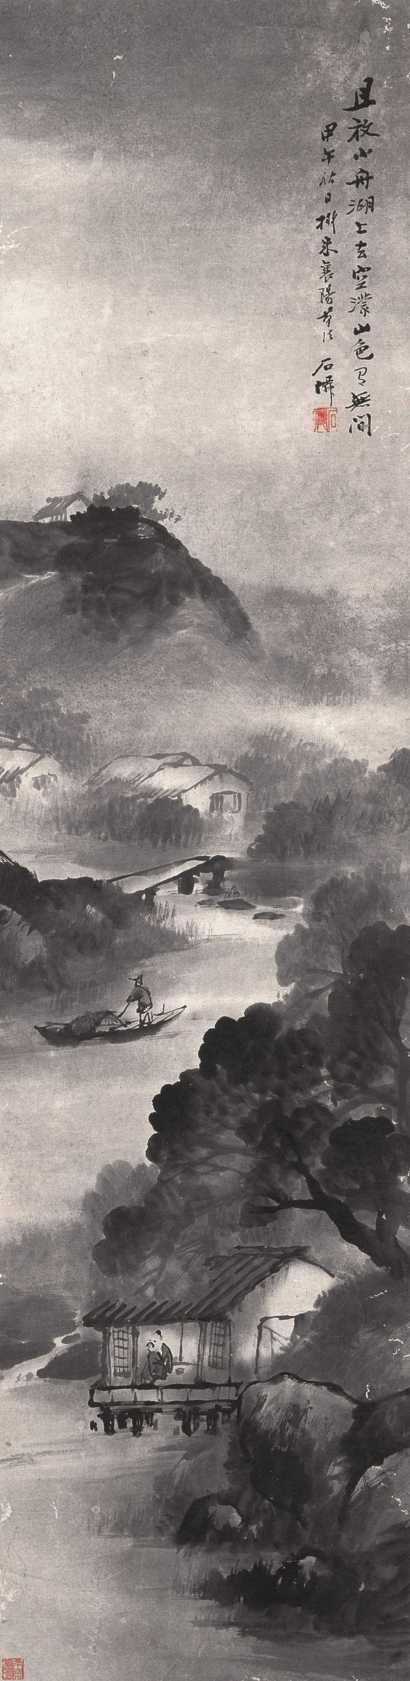 吴石僊 甲午(1894)年作 烟雨归舟 立轴